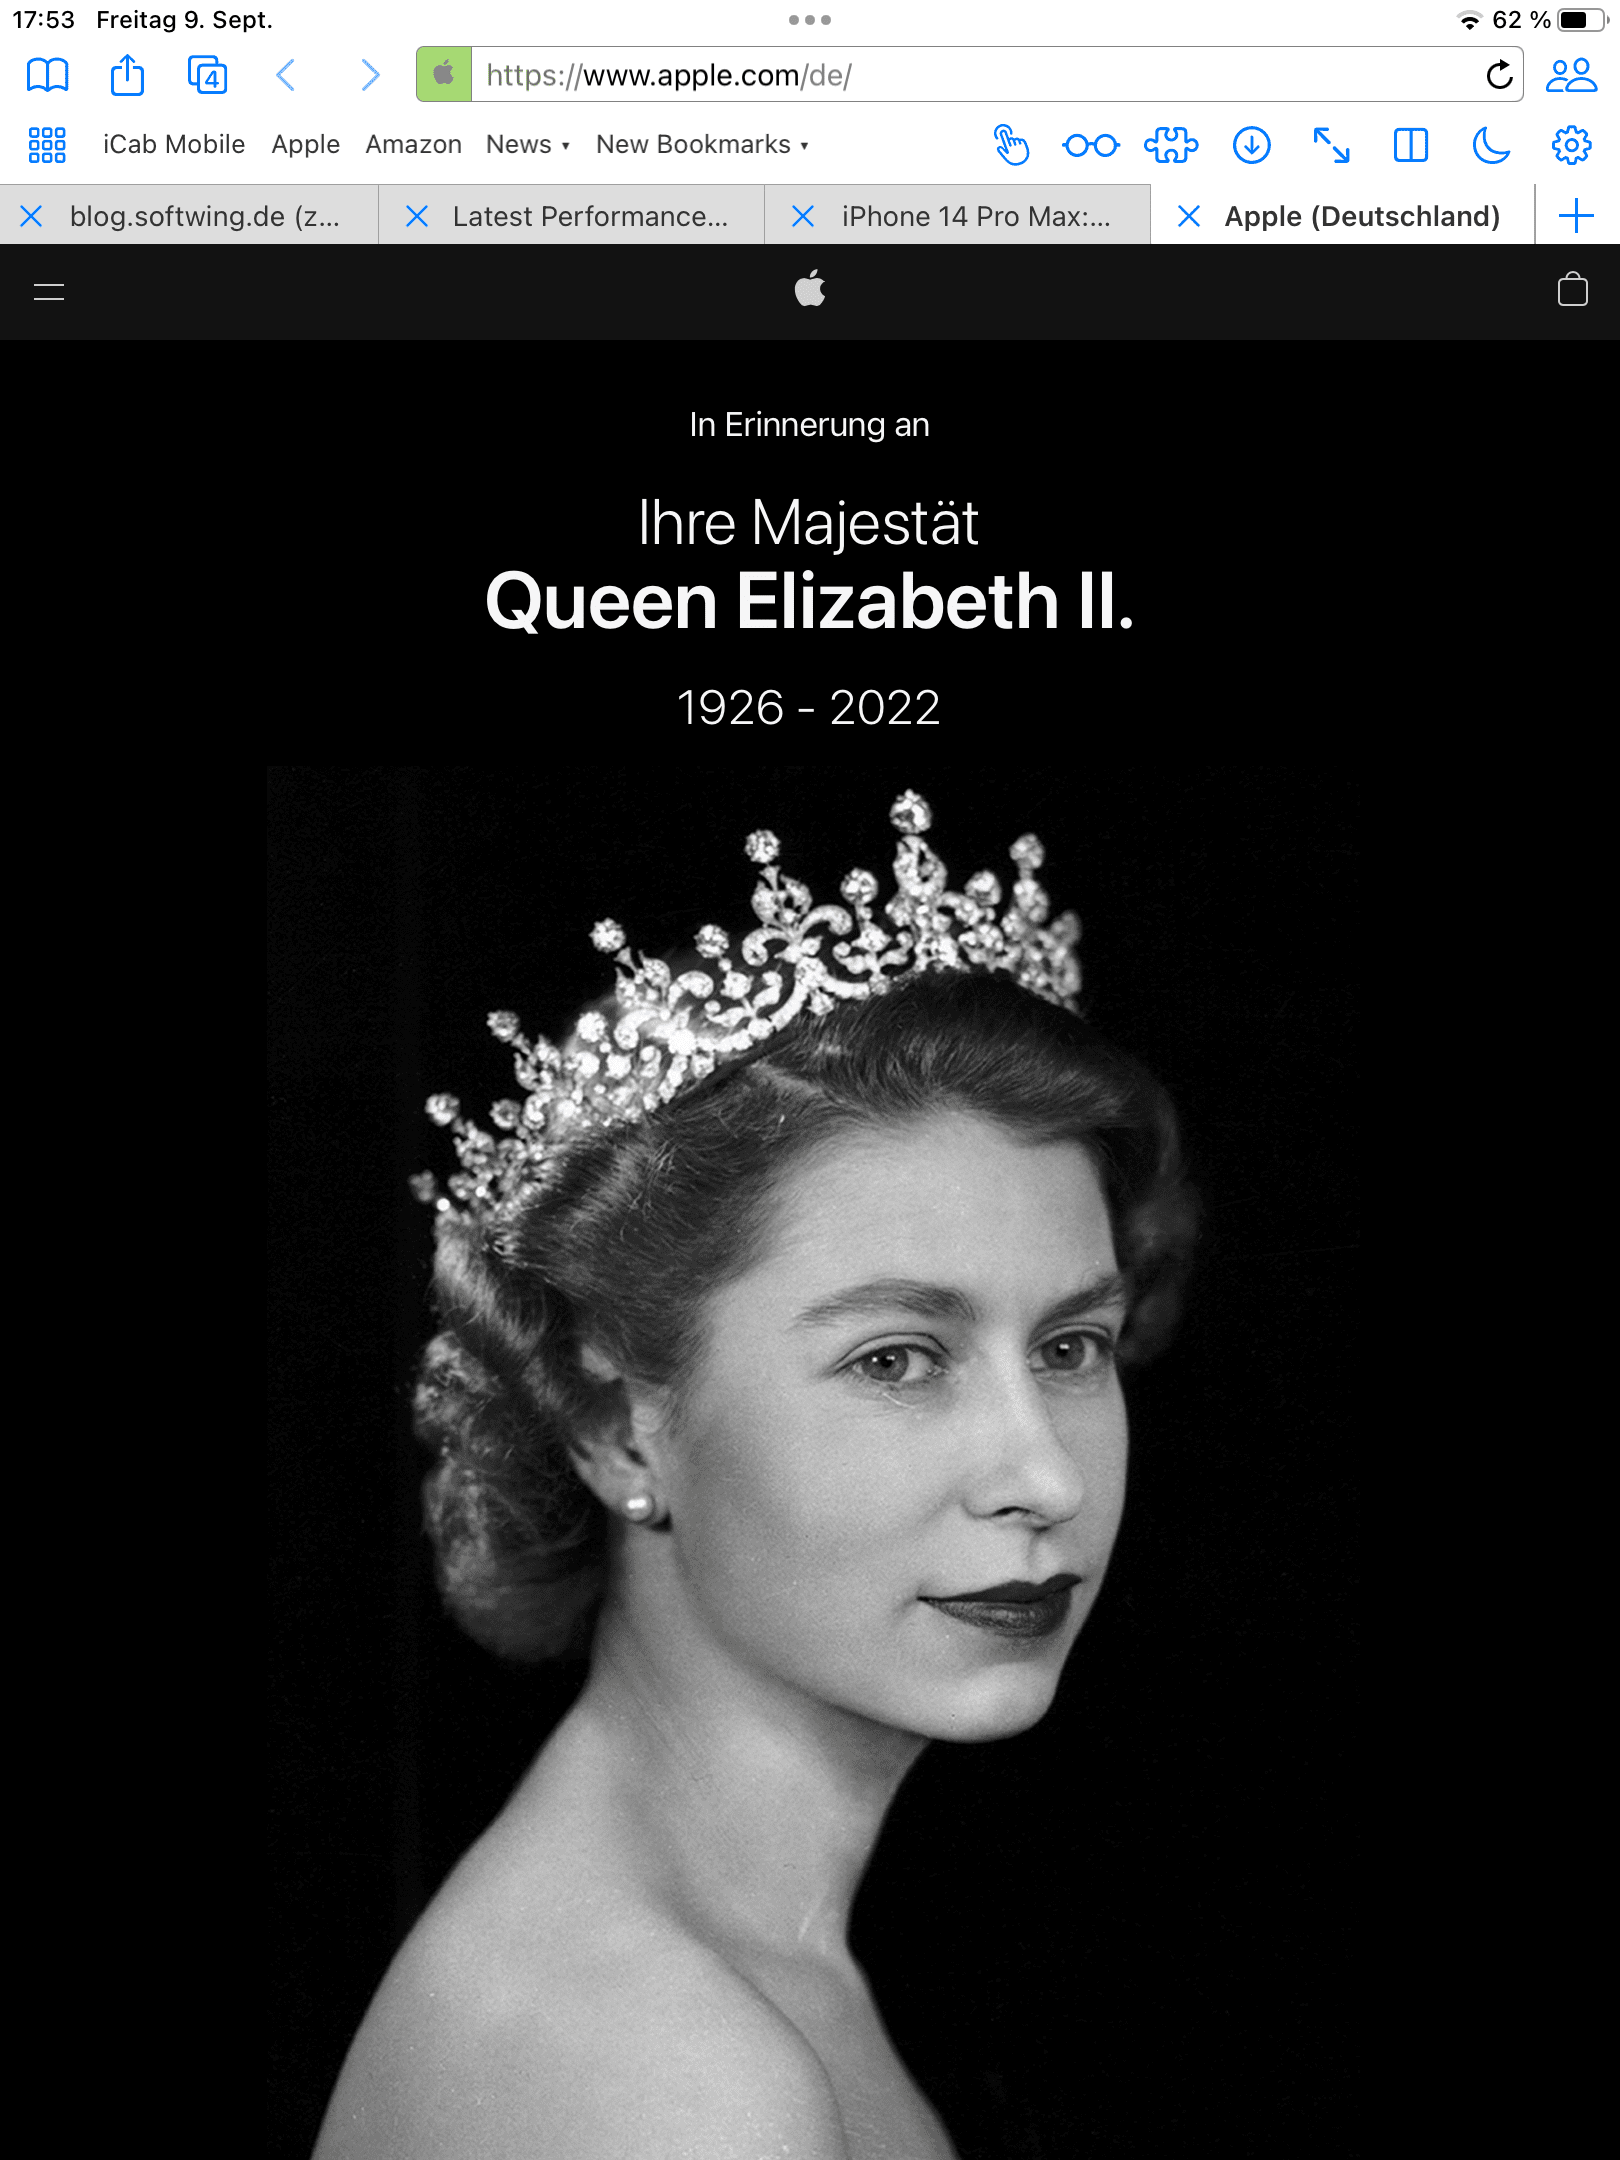 Apple-Site mit einem Portrait der Queen Elsabeth II. Von 1952